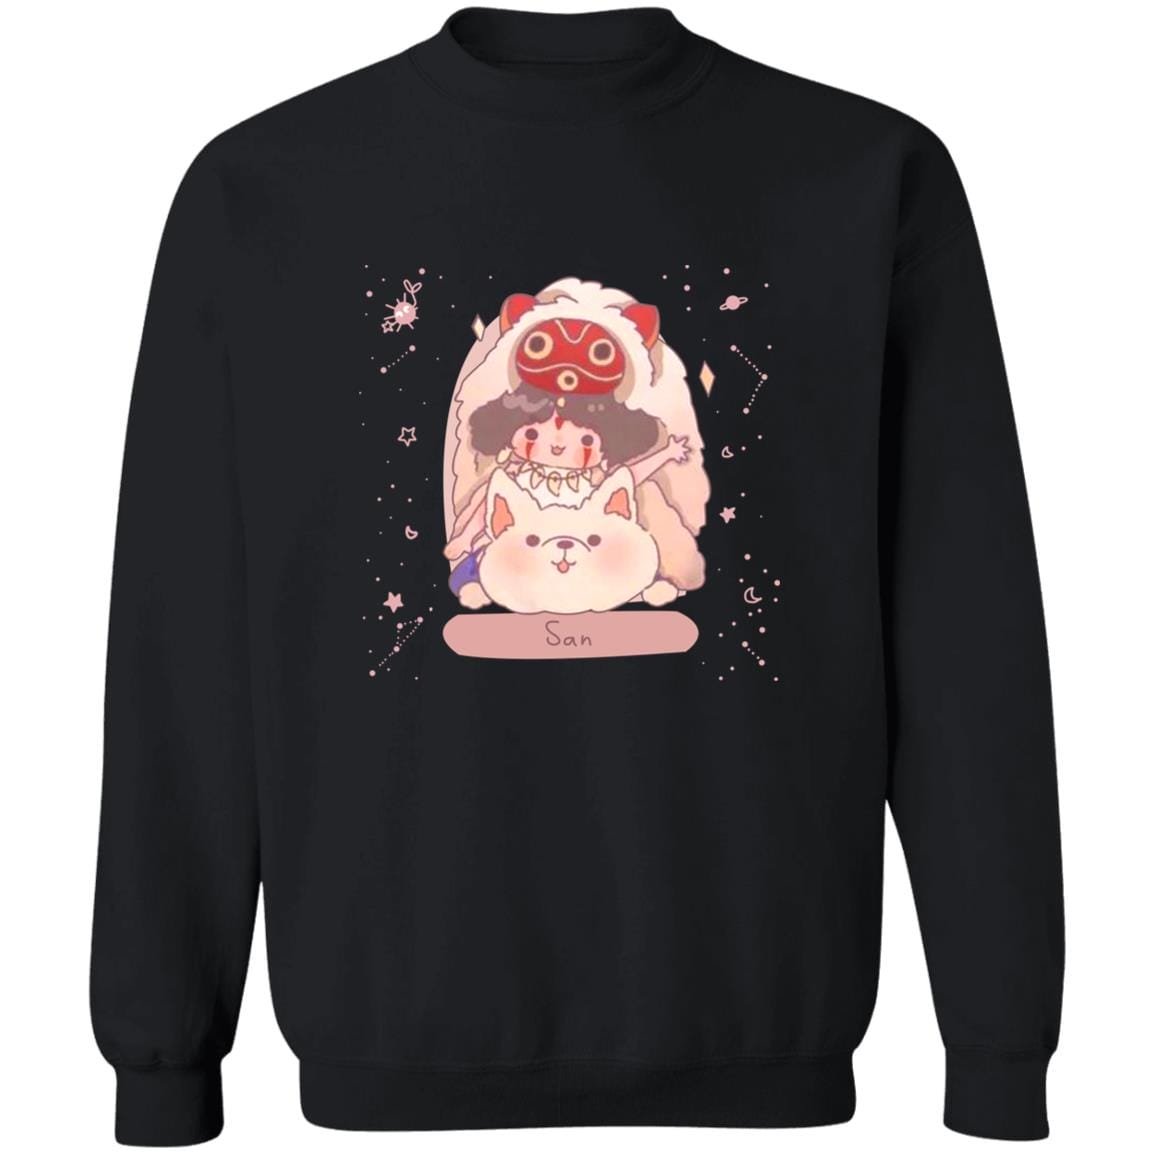 Mononoke Princess – San Fanart Sweatshirt